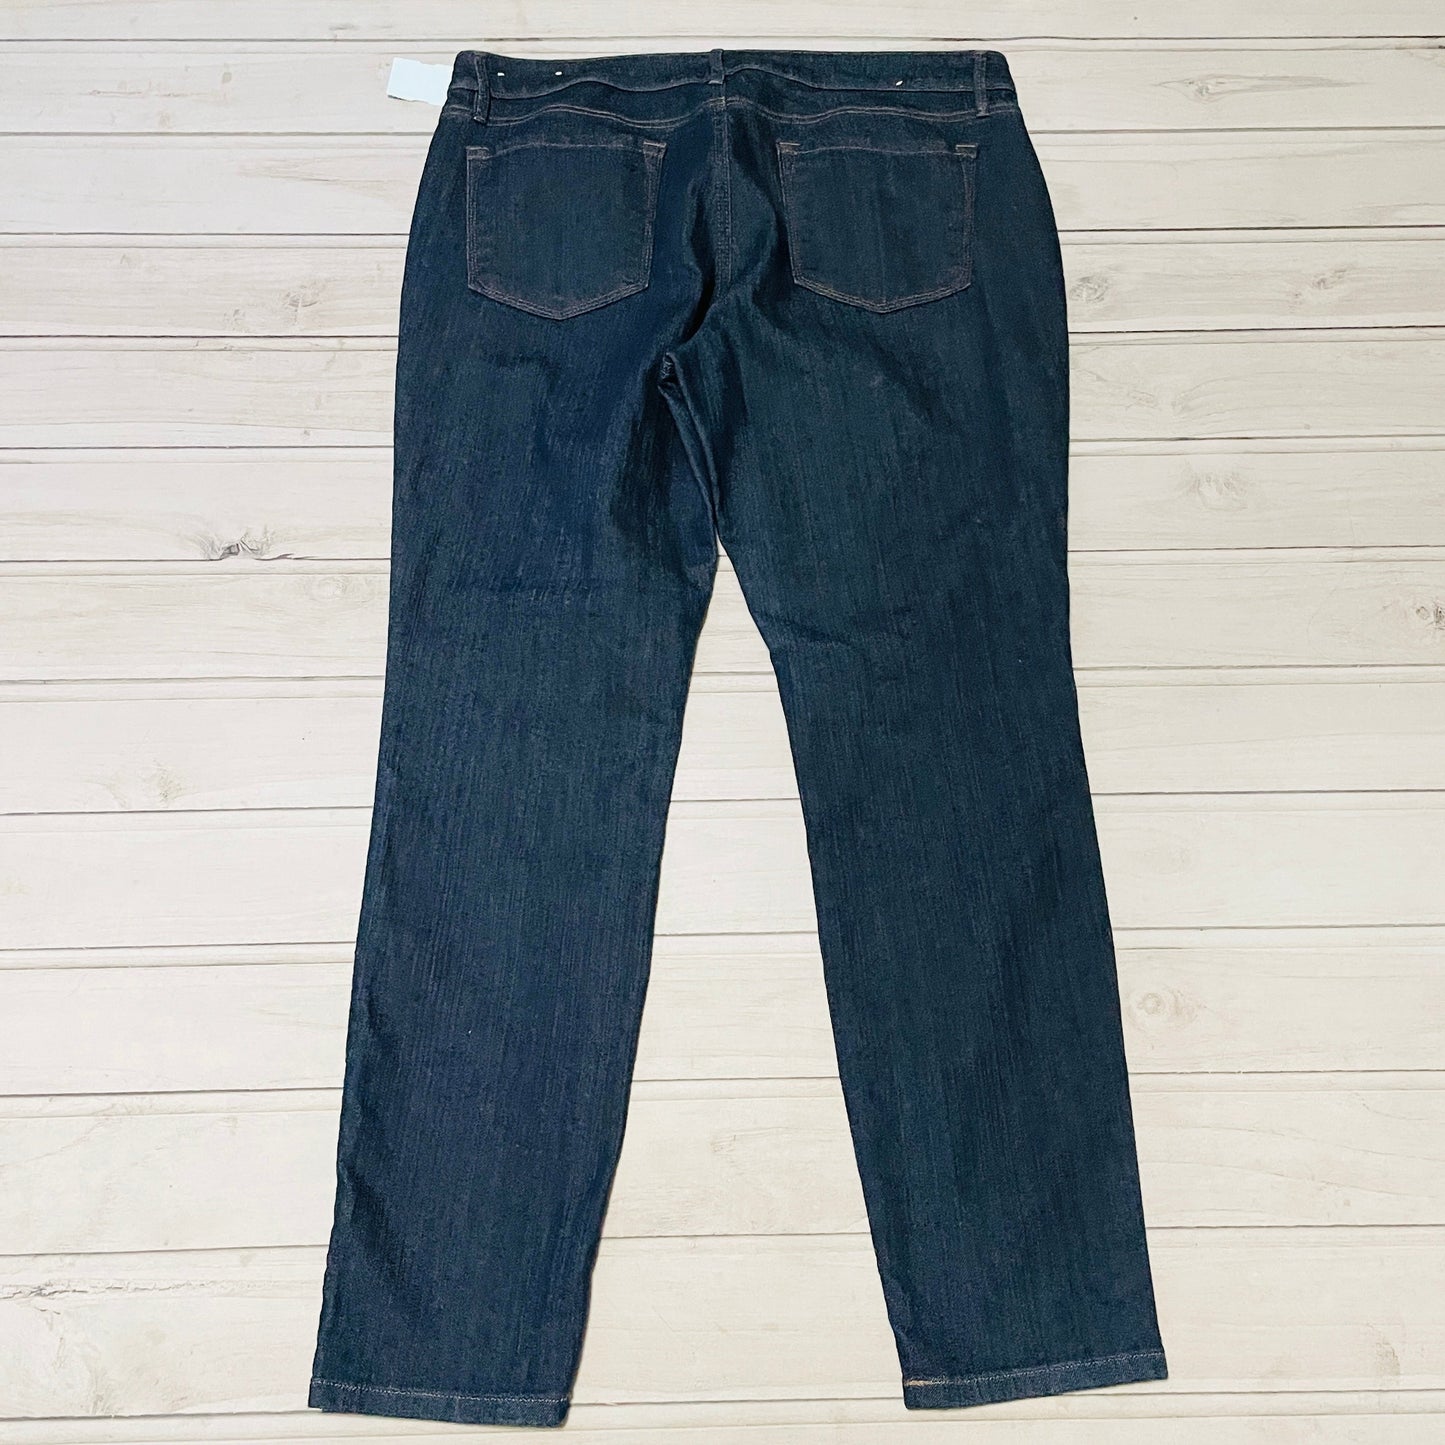 Jeans by Loft size 14